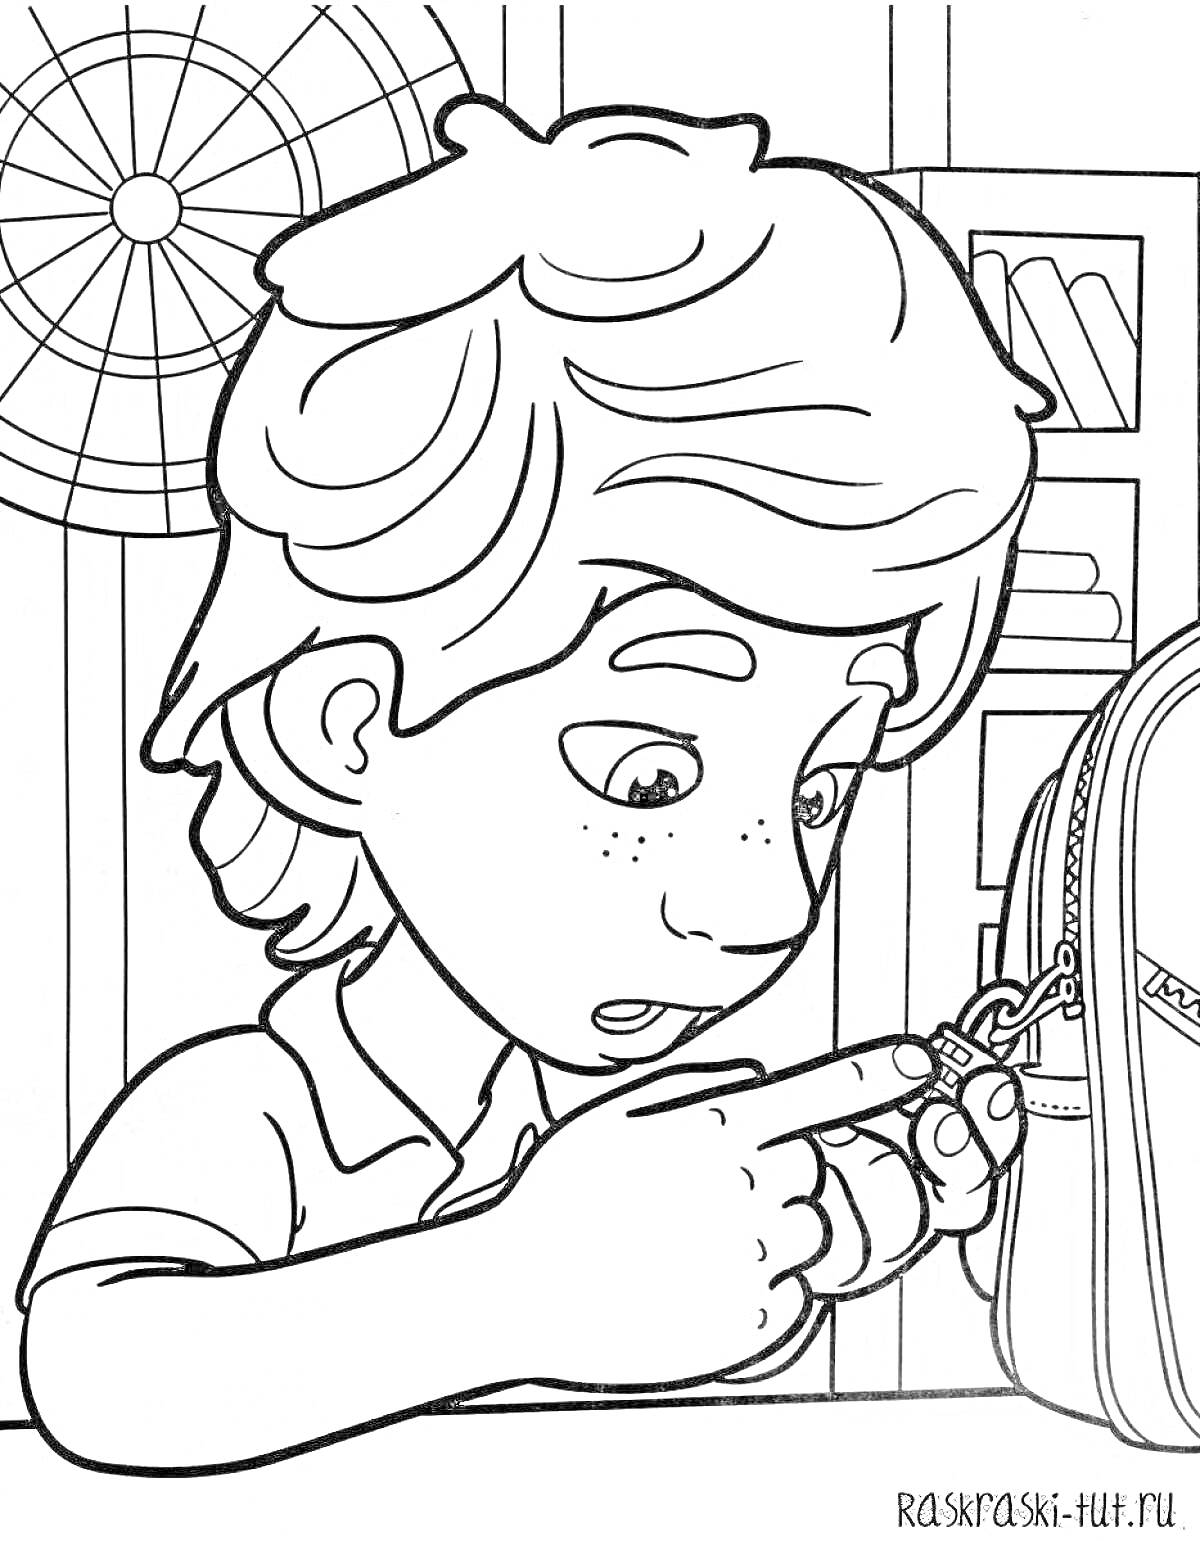 Раскраска Мальчик с короткими волосами смотрит на молнию рюкзака у себя в руке, на заднем плане есть полка с книгами и мишень